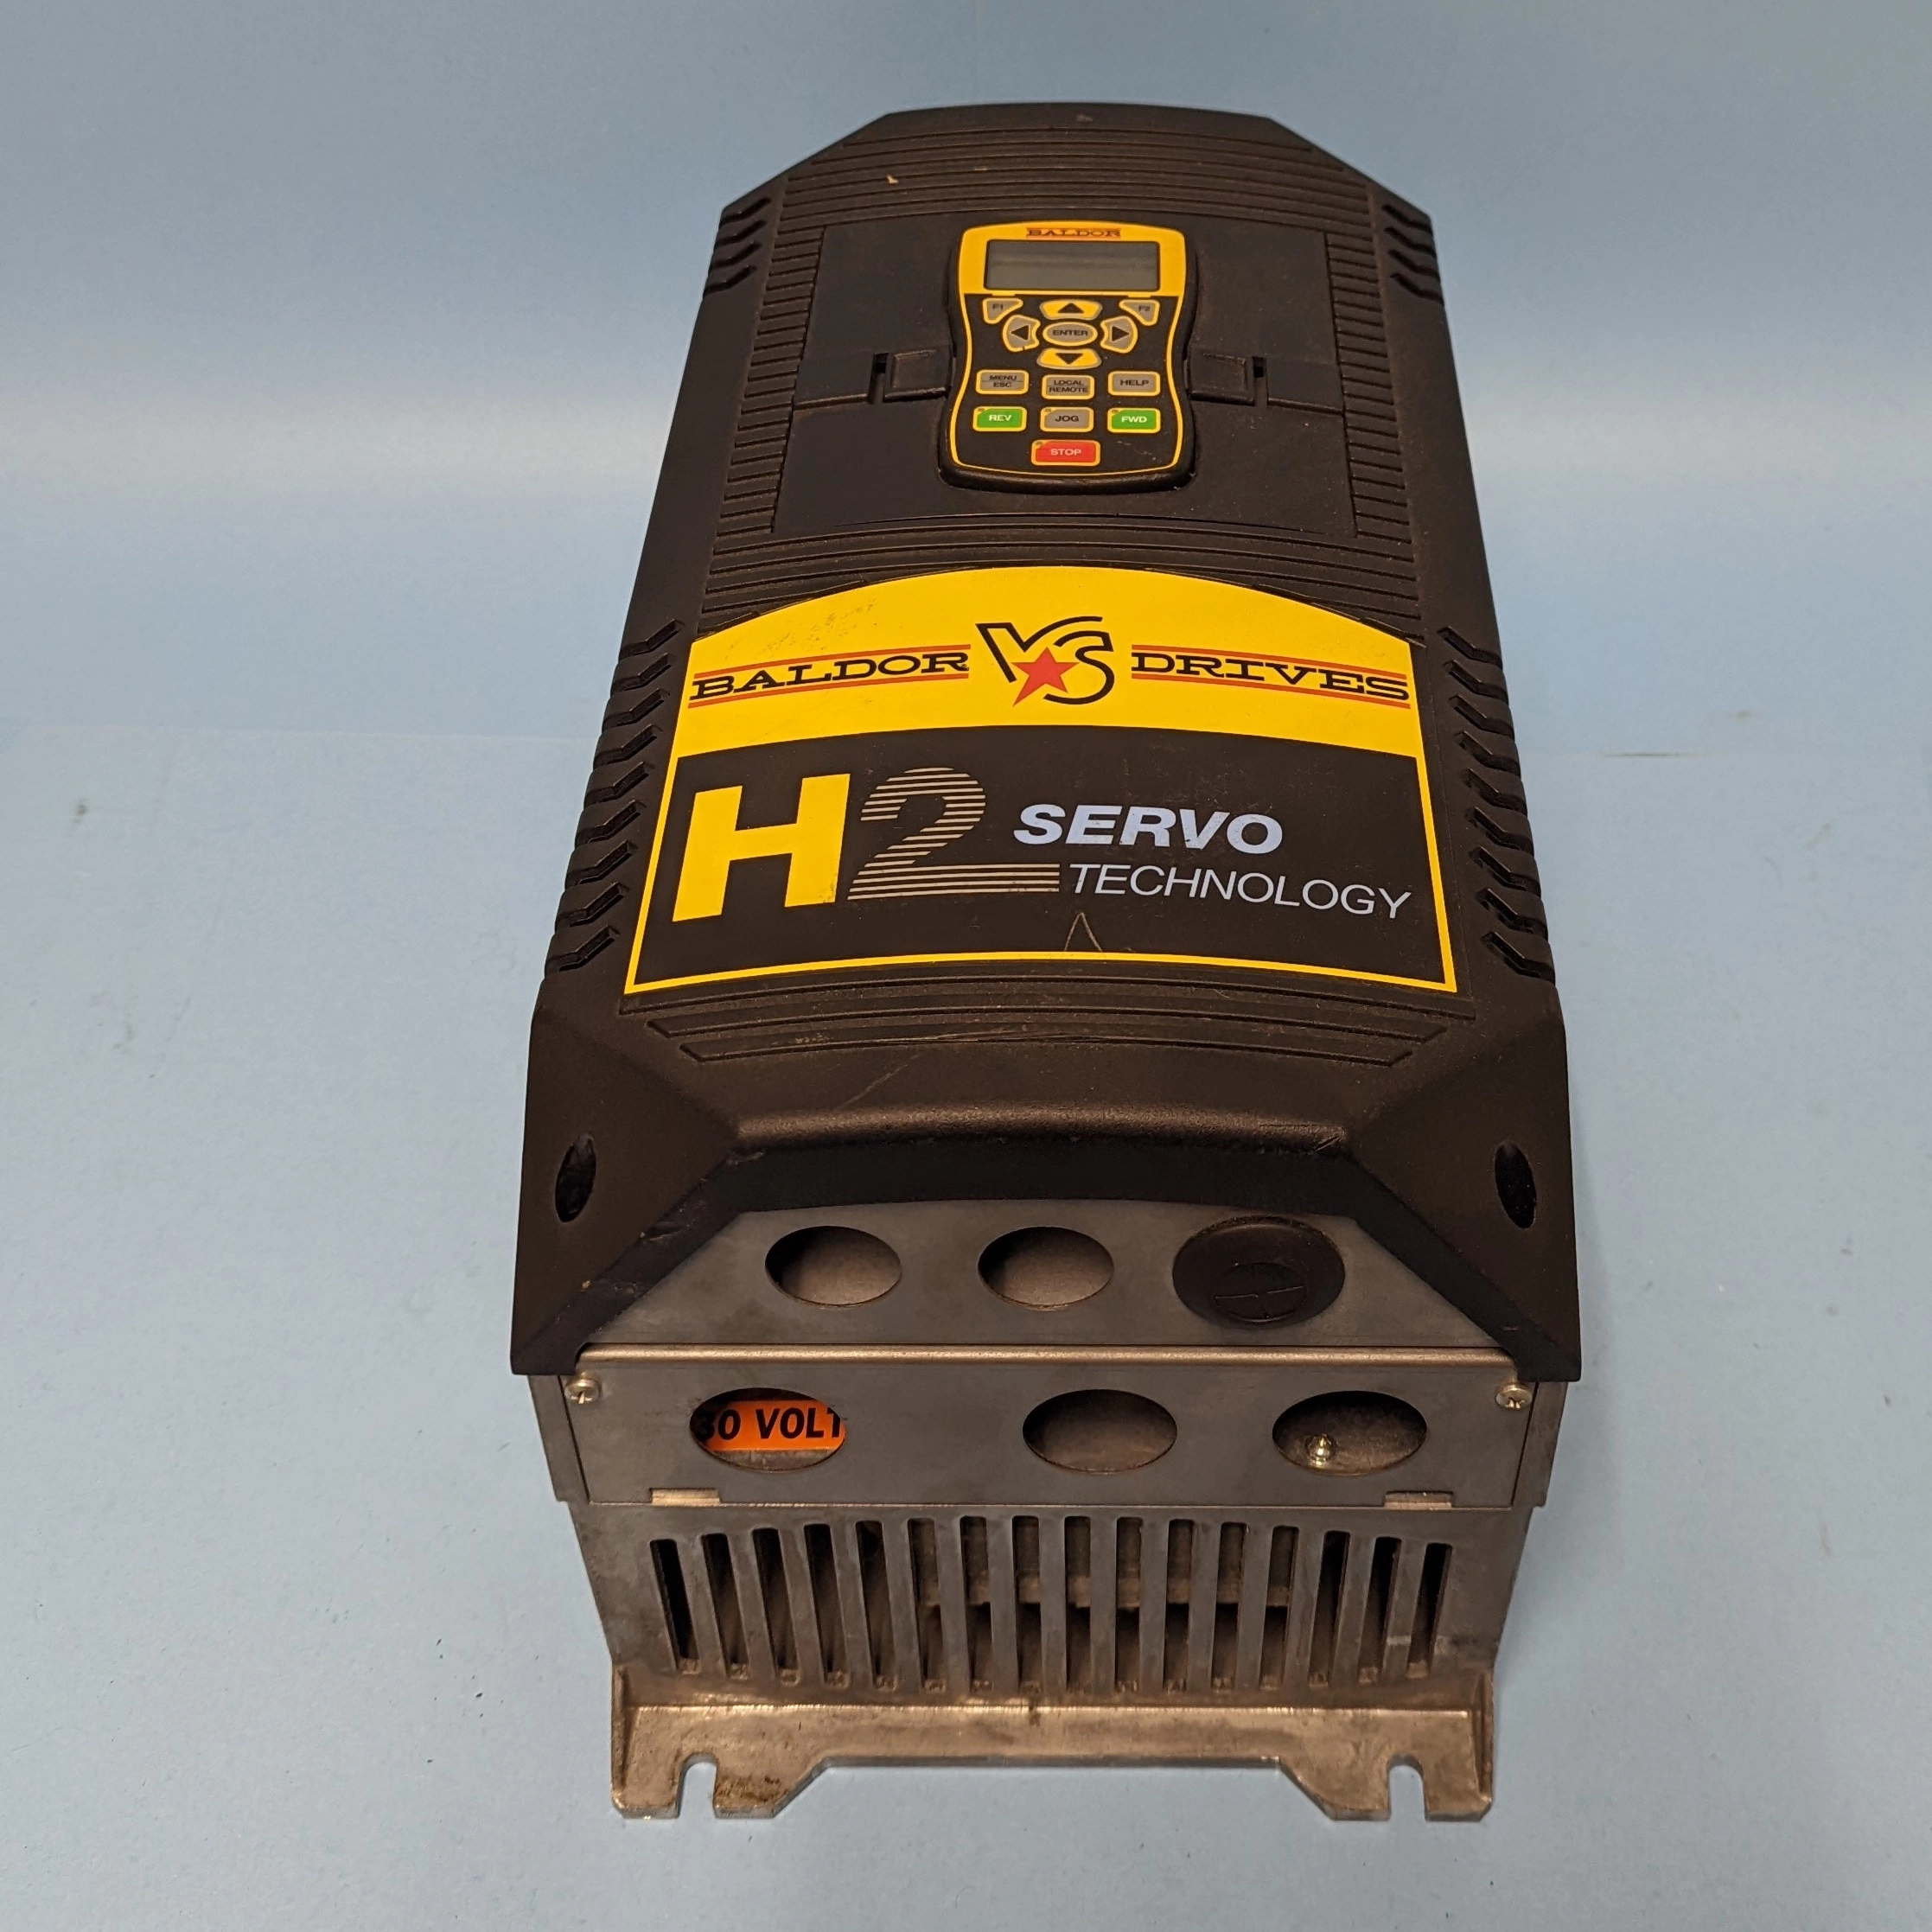 Baldor H2 Serve Tech Amplifier DC Drive, 3 HP, VS1SD2A28-1B